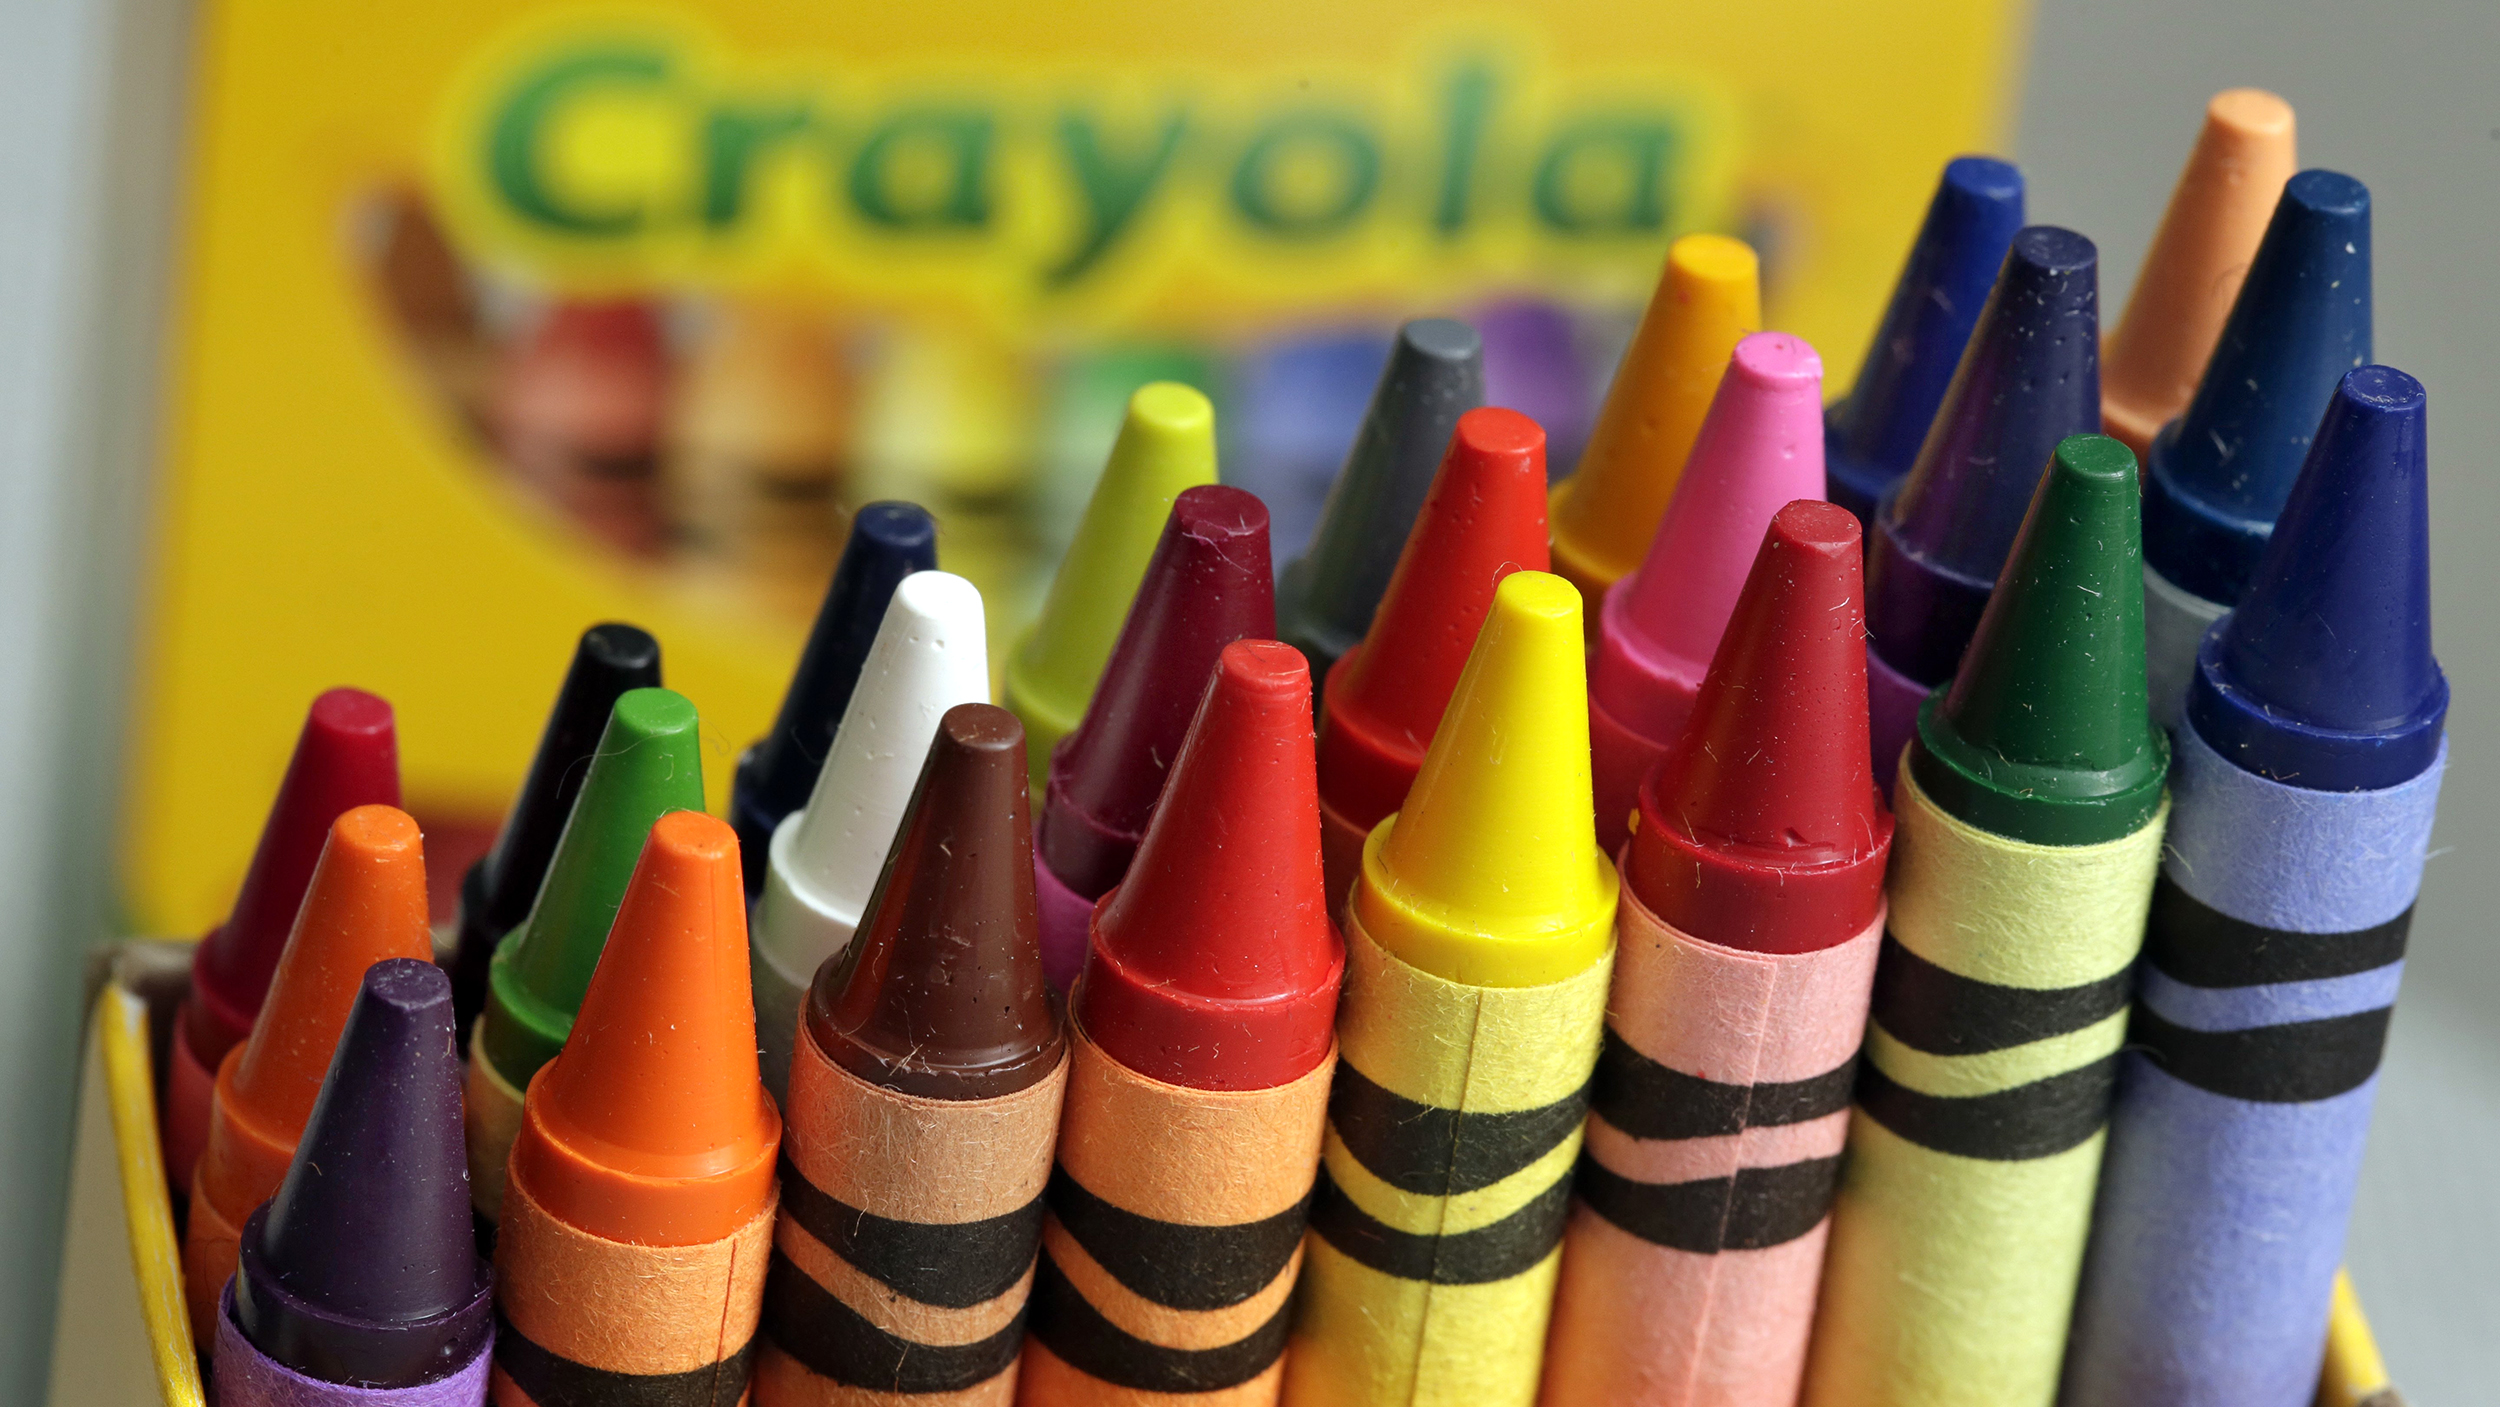 crayola-crayons-tease-today-170330-02_b696805ab8733bd2f4c81b7795253ee3.jpg